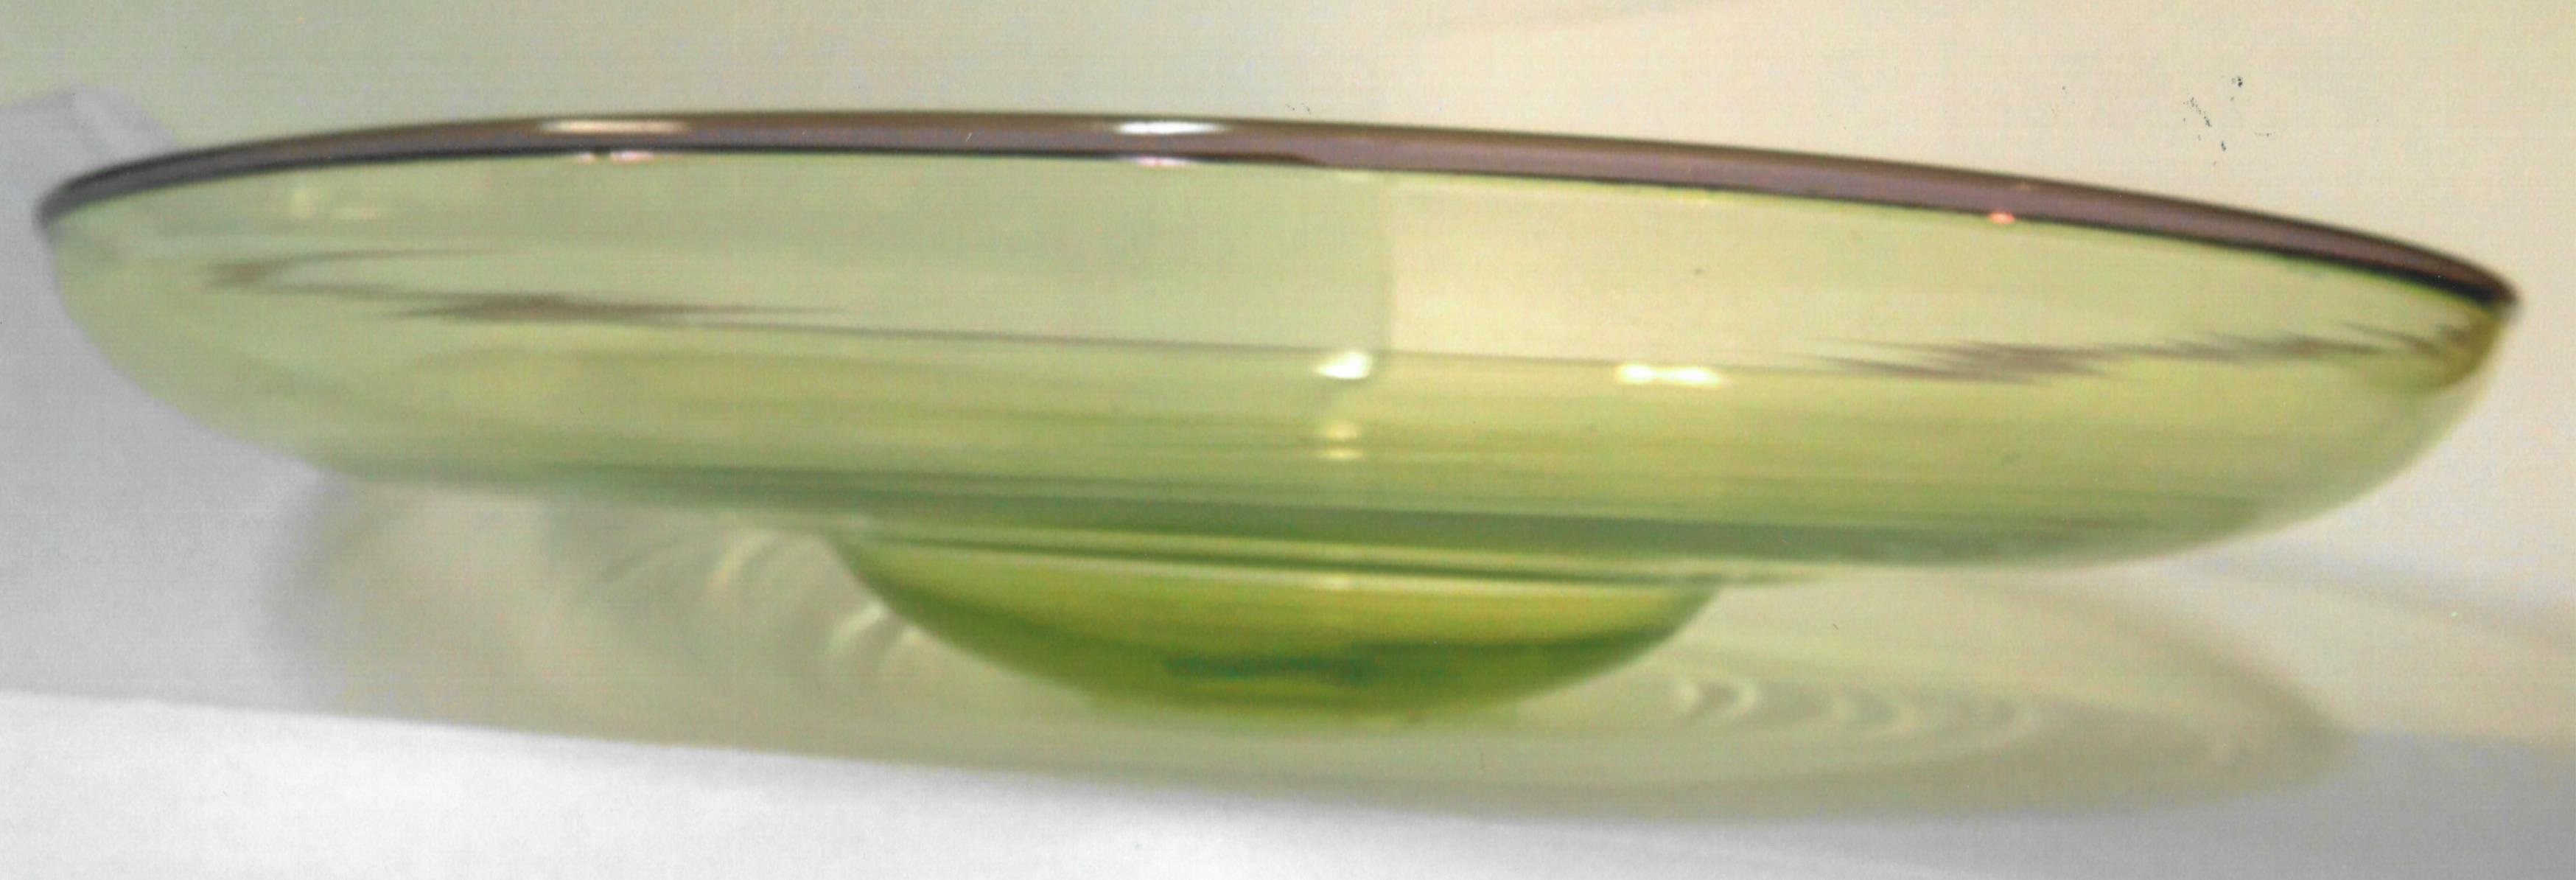 8391 - Topaz Transparent Bowl